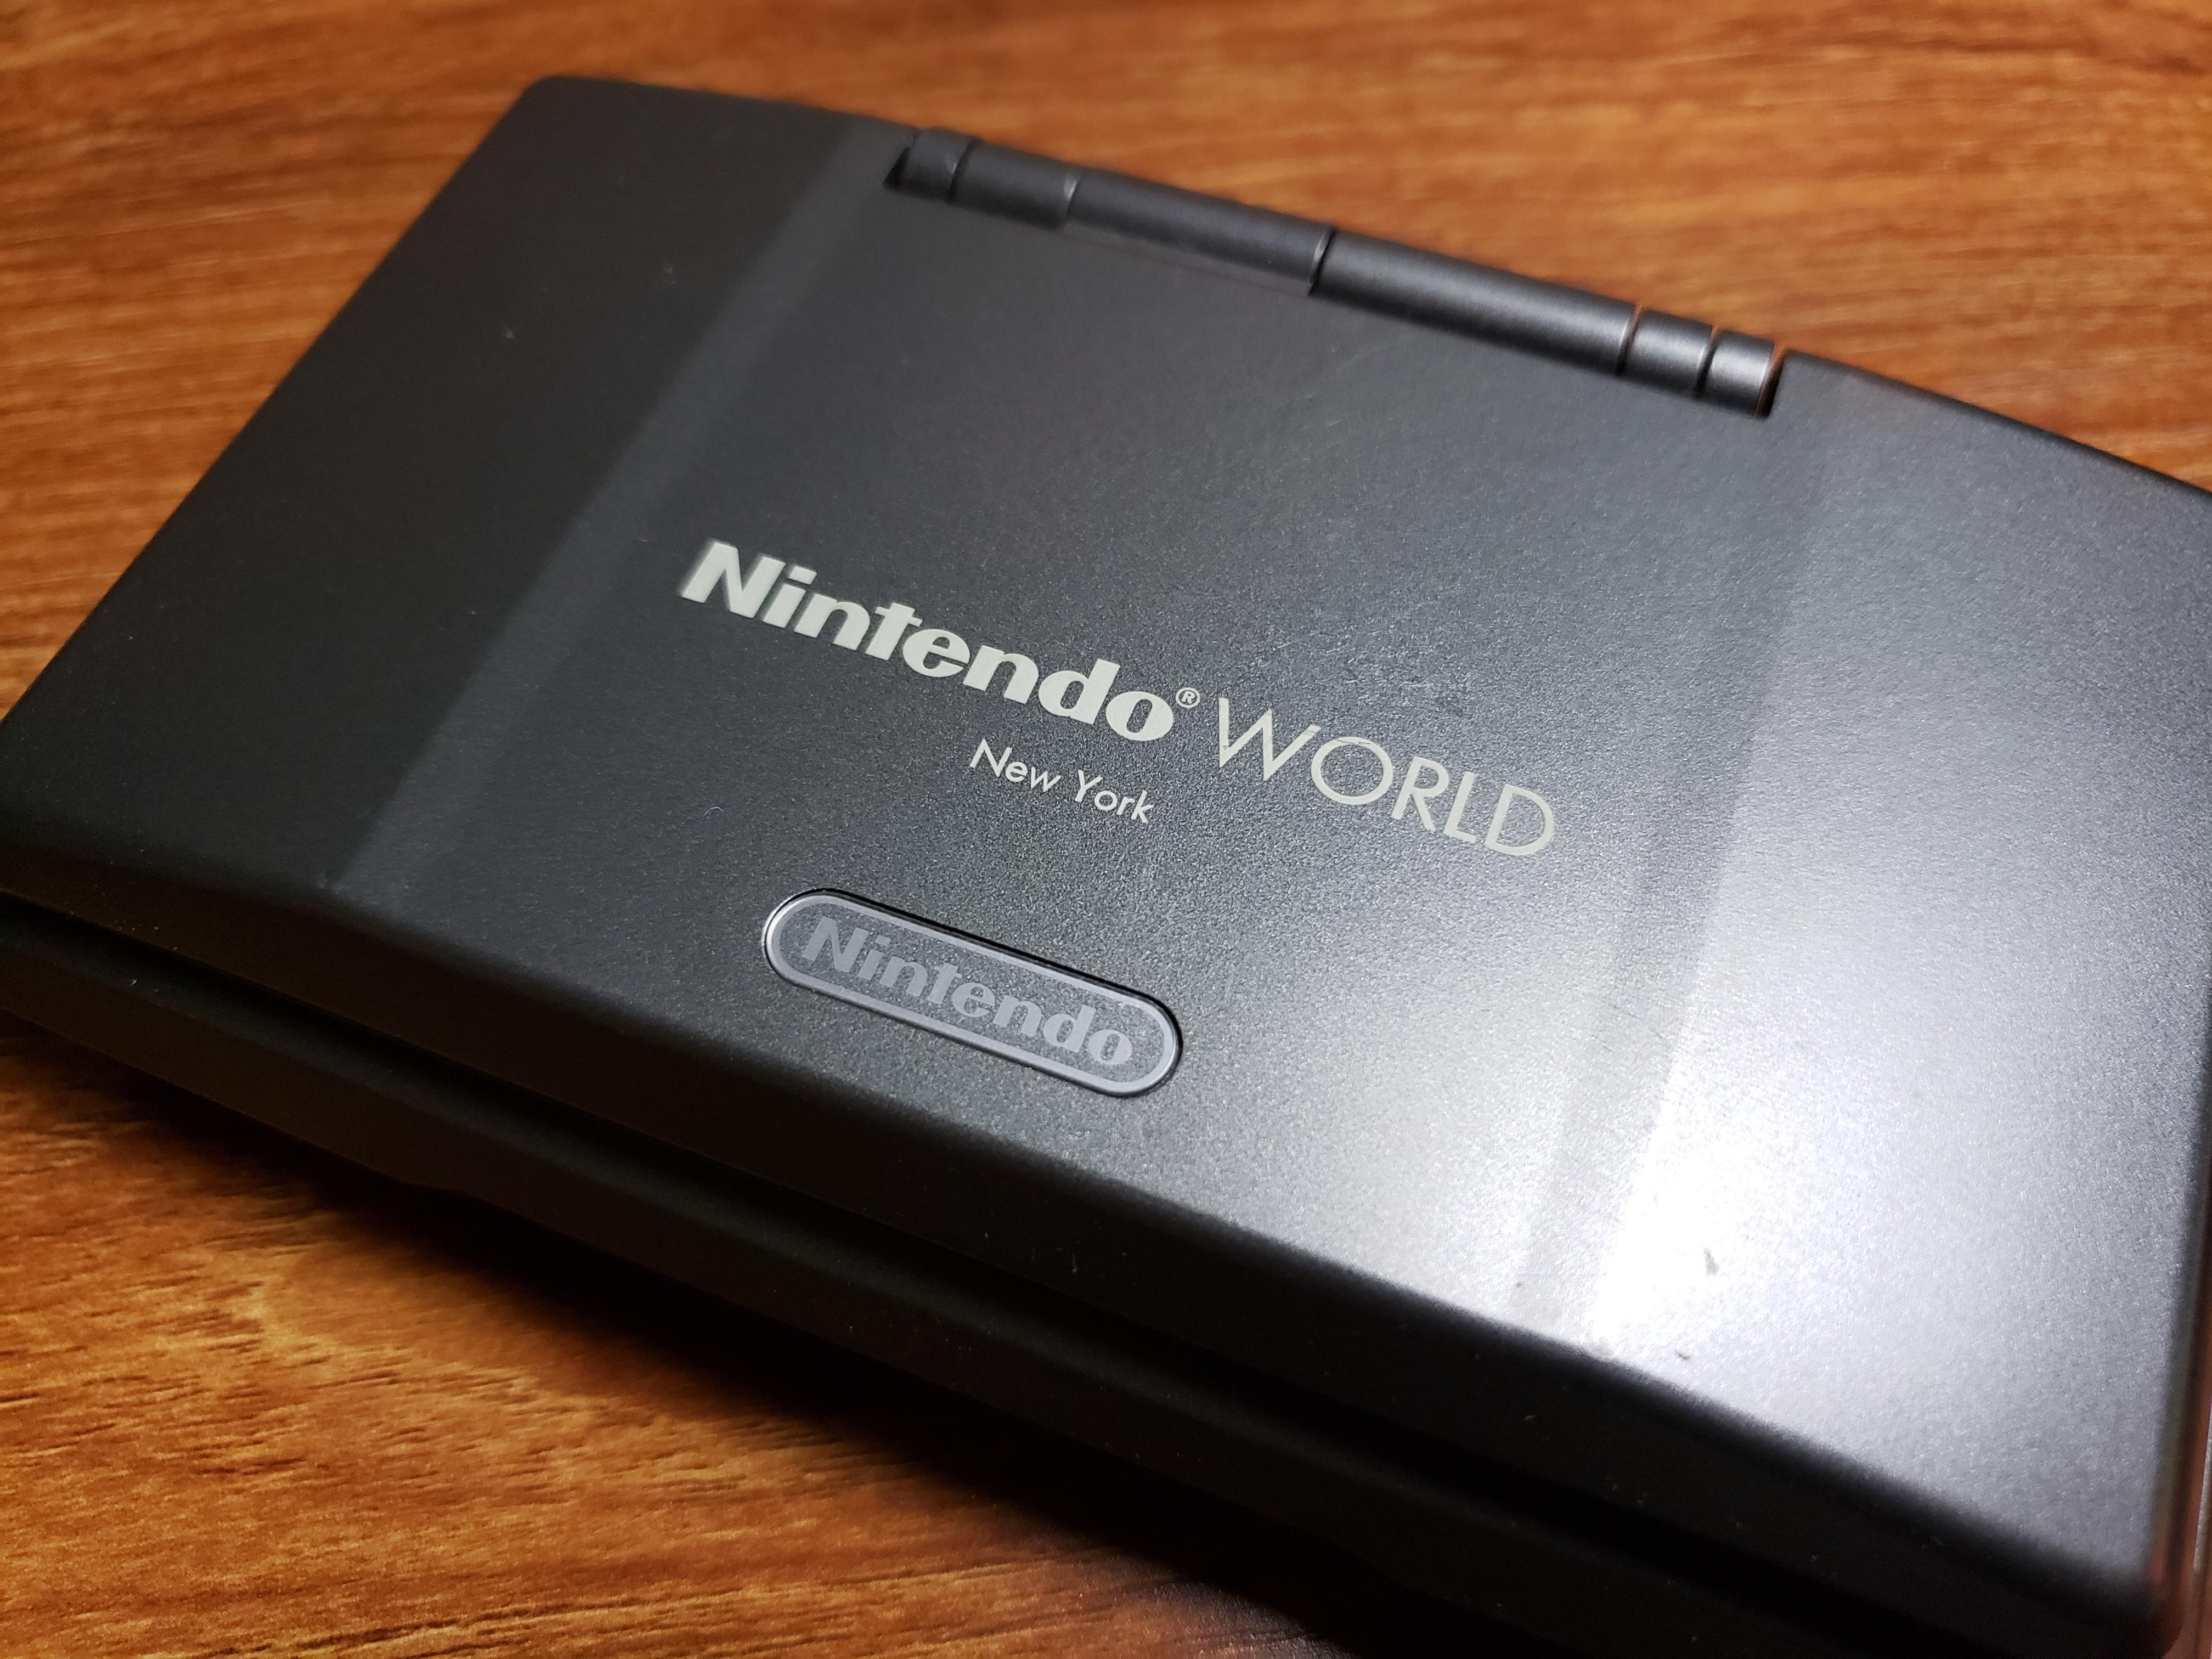 tale komme til syne tilfredshed Nintendo DS Black Console - Nintendo World New York - Etched Nintendo –  Squeaks Game World